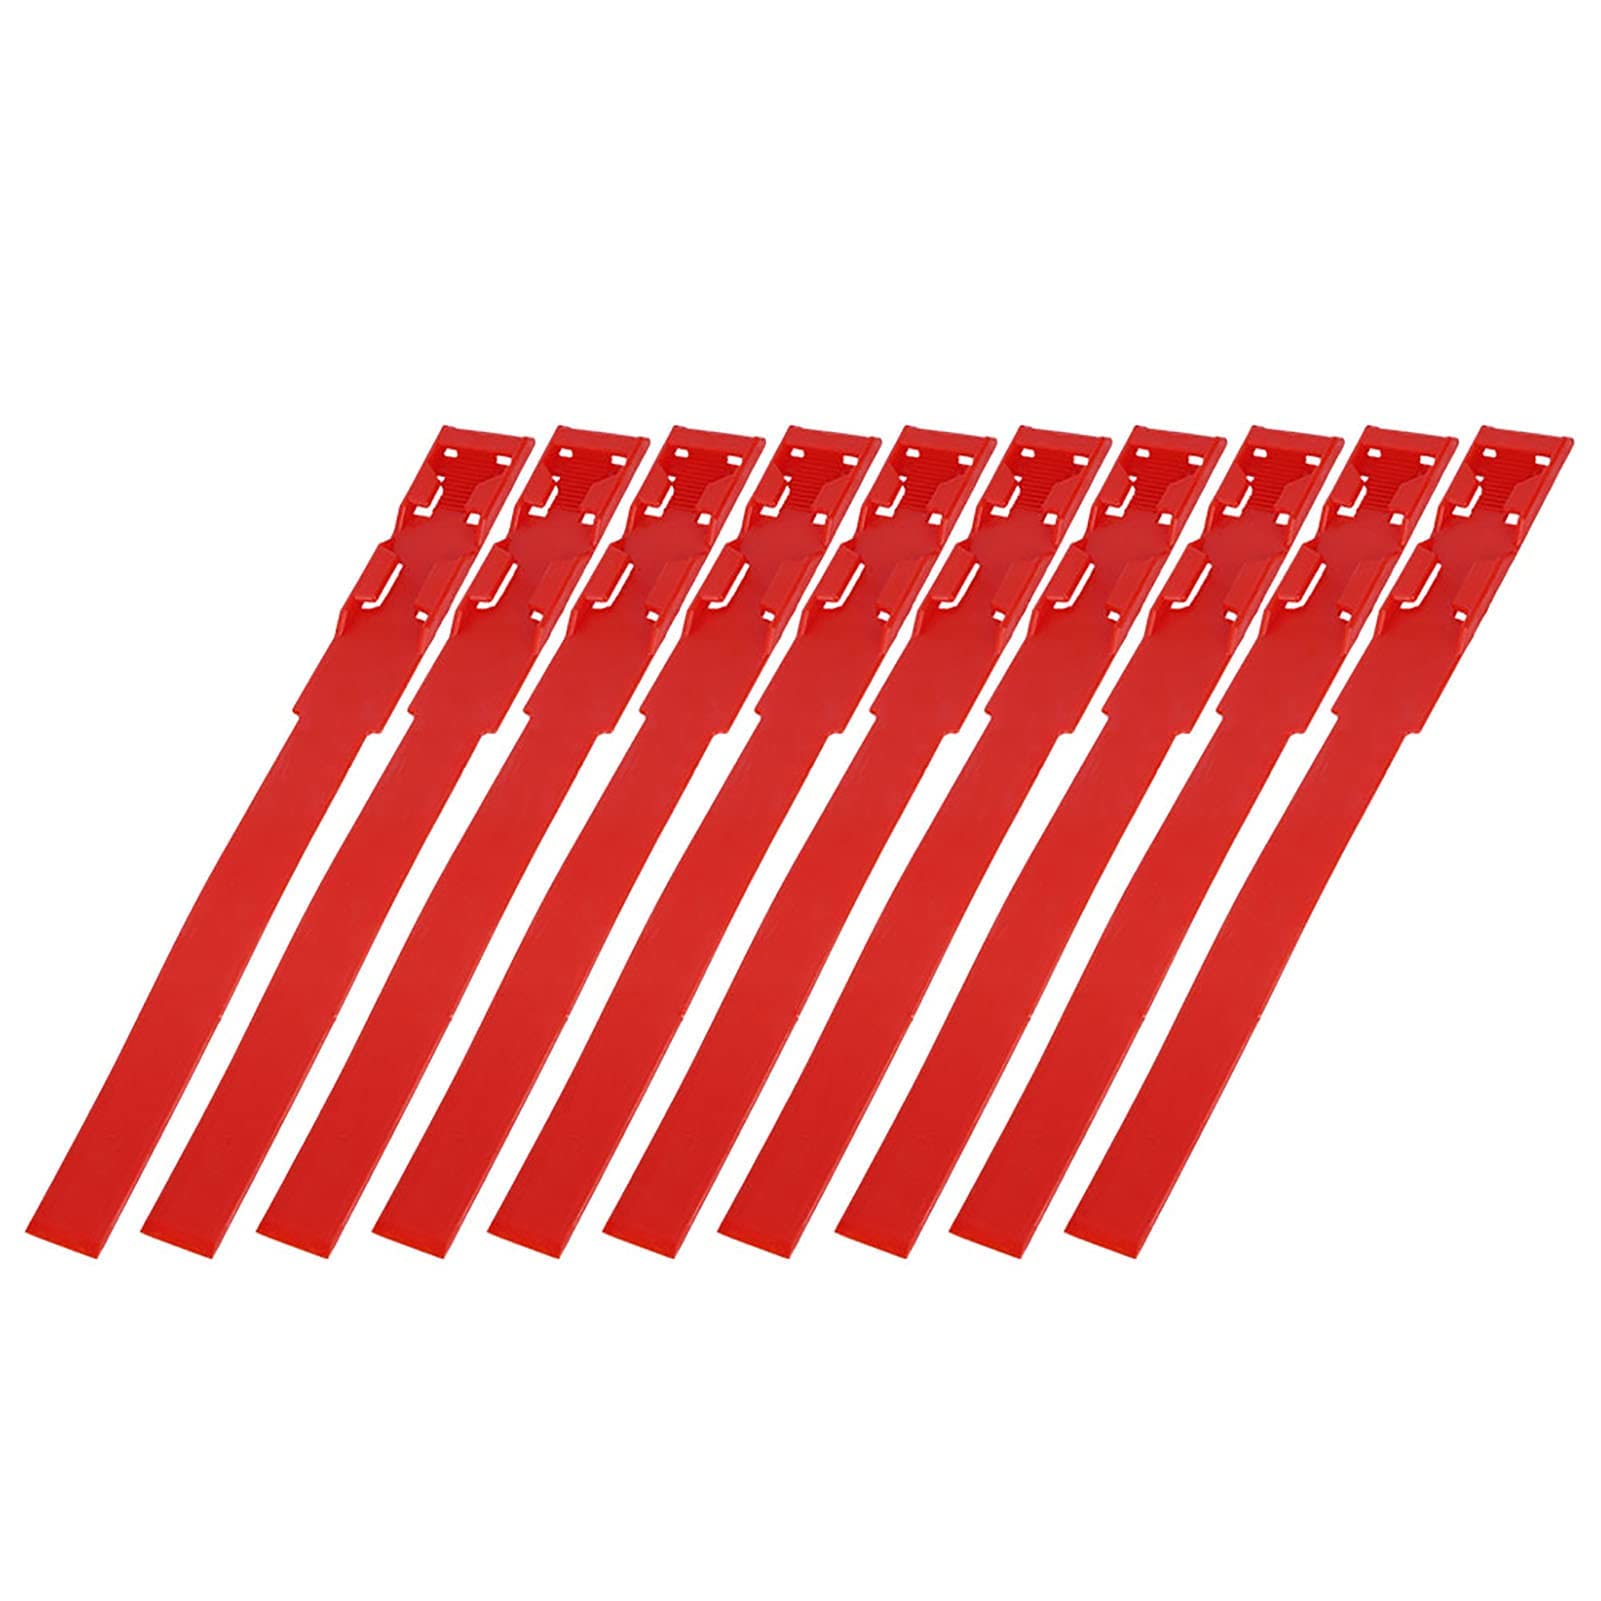 Atyhao 10 Stück Identifikationsbänder für Bänder, Kuh, Rindermarkierungen, Ringe für Bauernhof (rot)